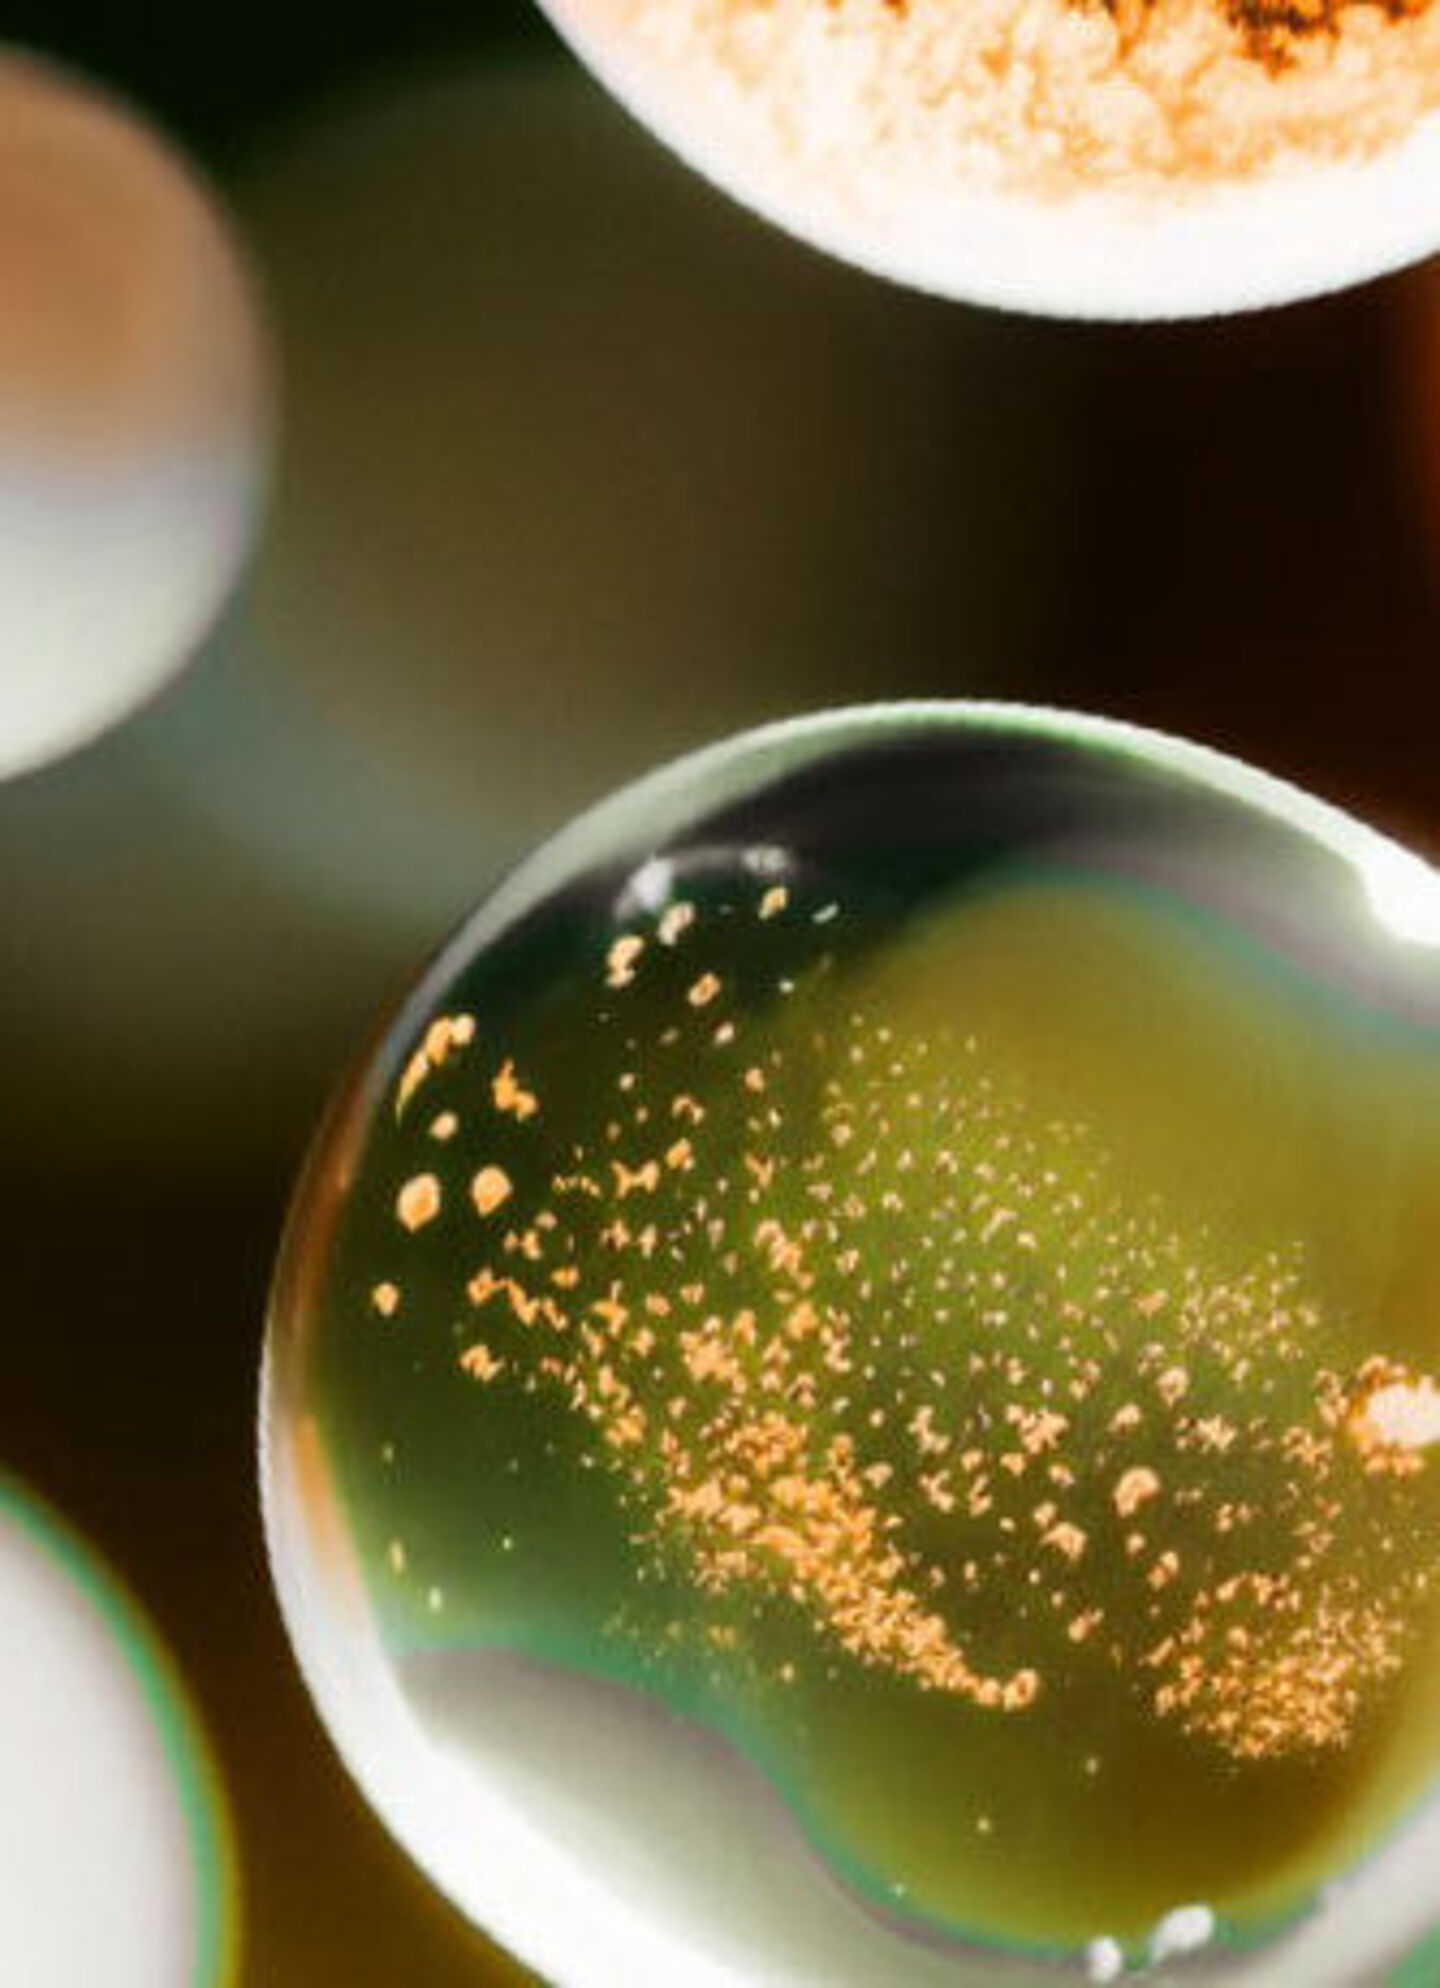 Oil bubbles